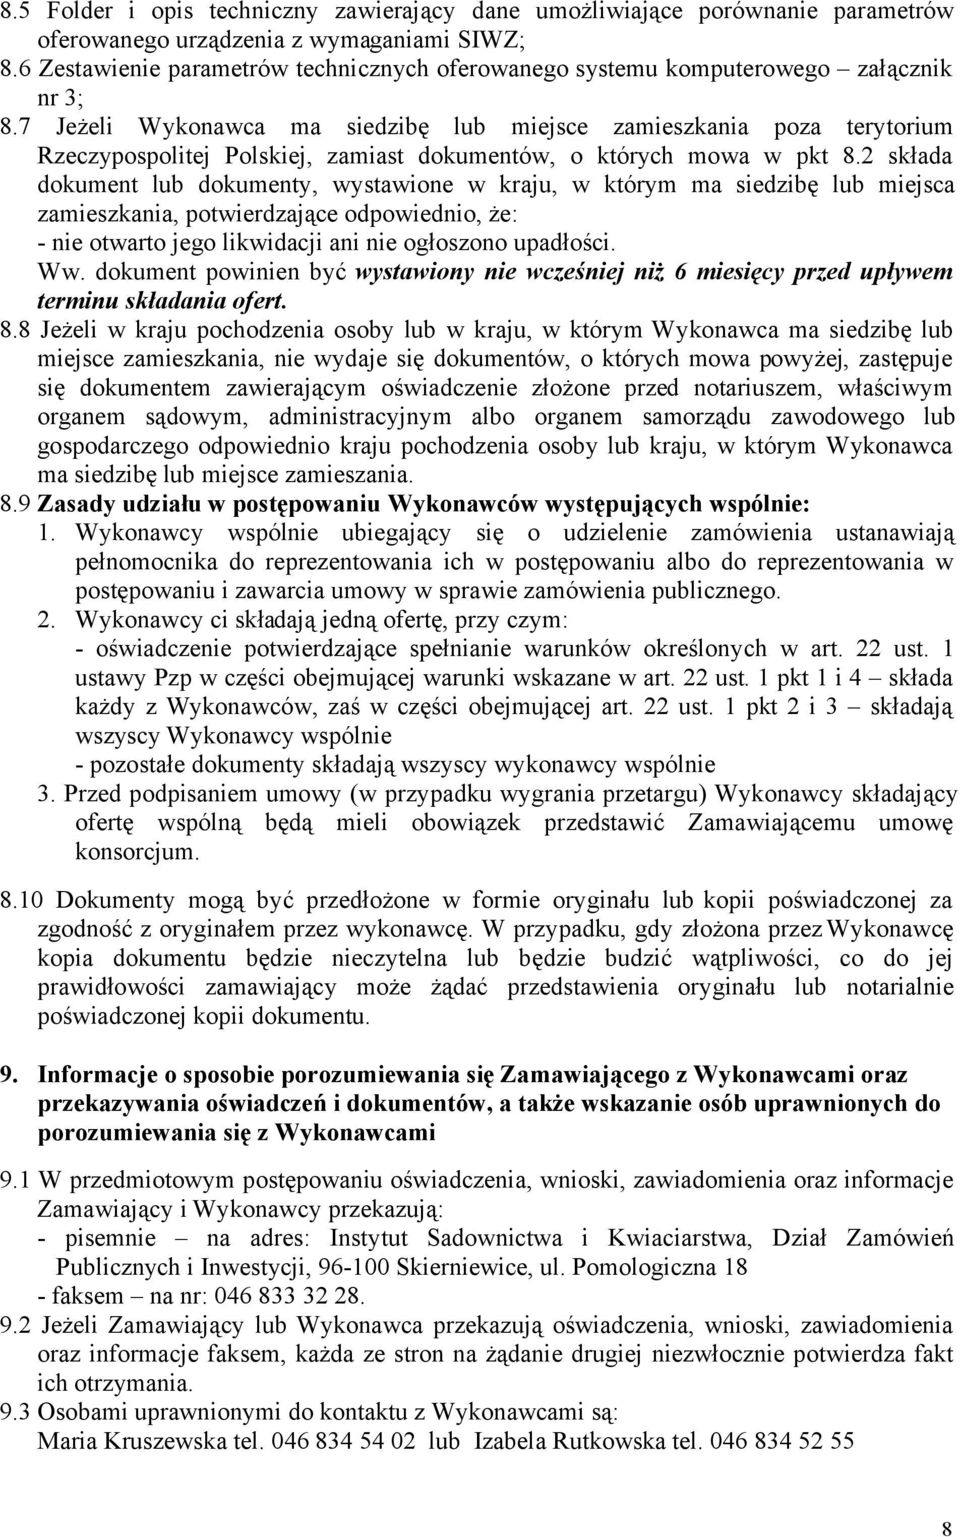 7 Jeżeli Wykonawca ma siedzibę lub miejsce zamieszkania poza terytorium Rzeczypospolitej Polskiej, zamiast dokumentów, o których mowa w pkt 8.